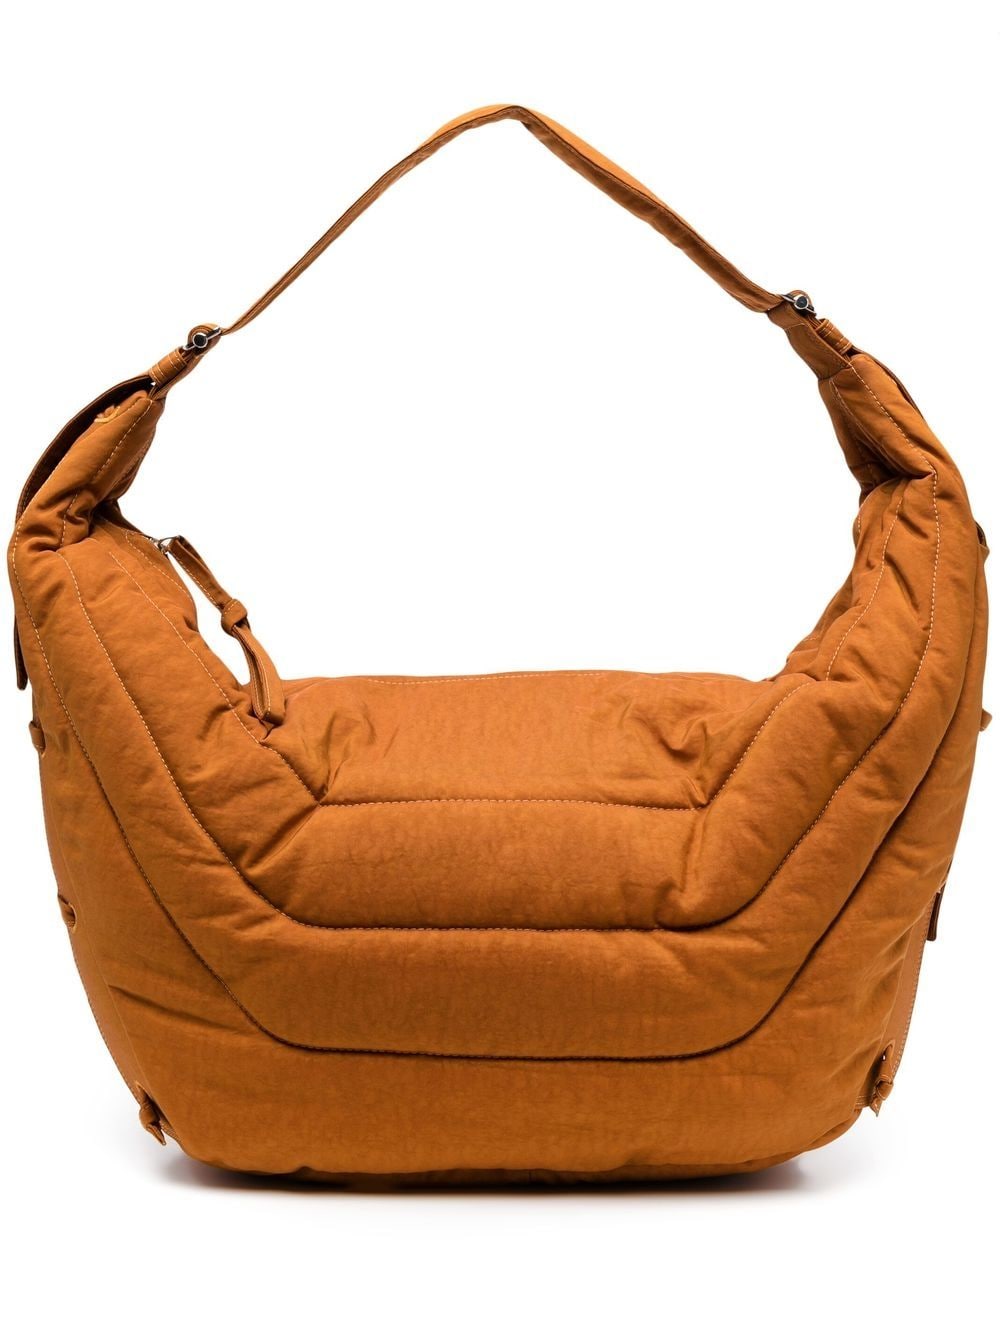 Fashion Lingge Quilted Women Handbags Designer Padded Shoulder Bag